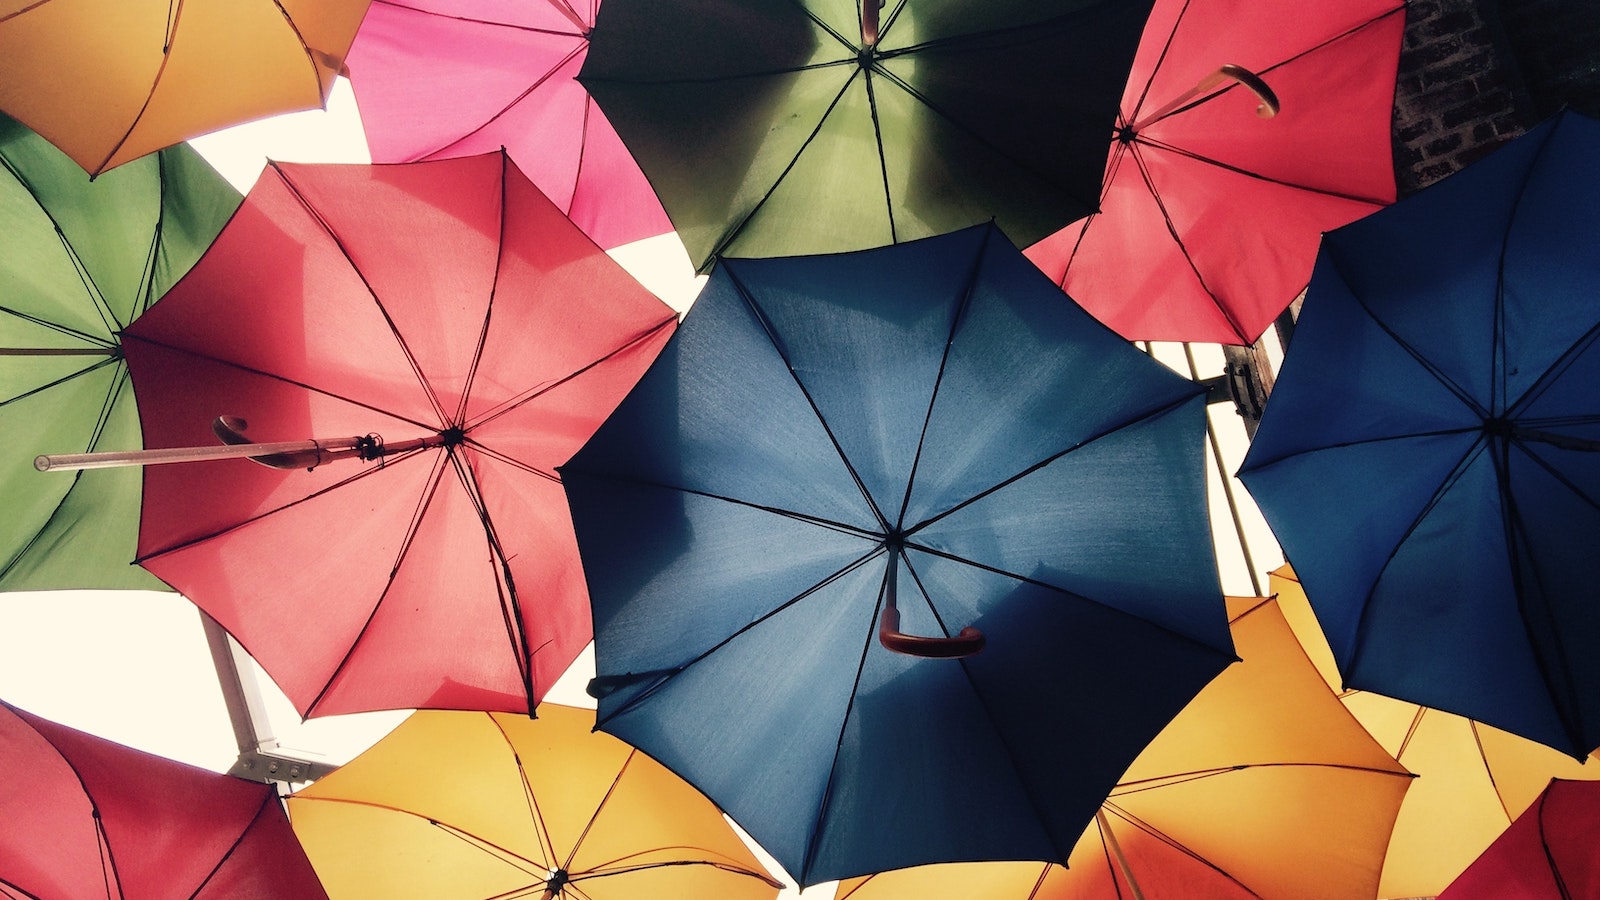 Colorful shot of umbrellas